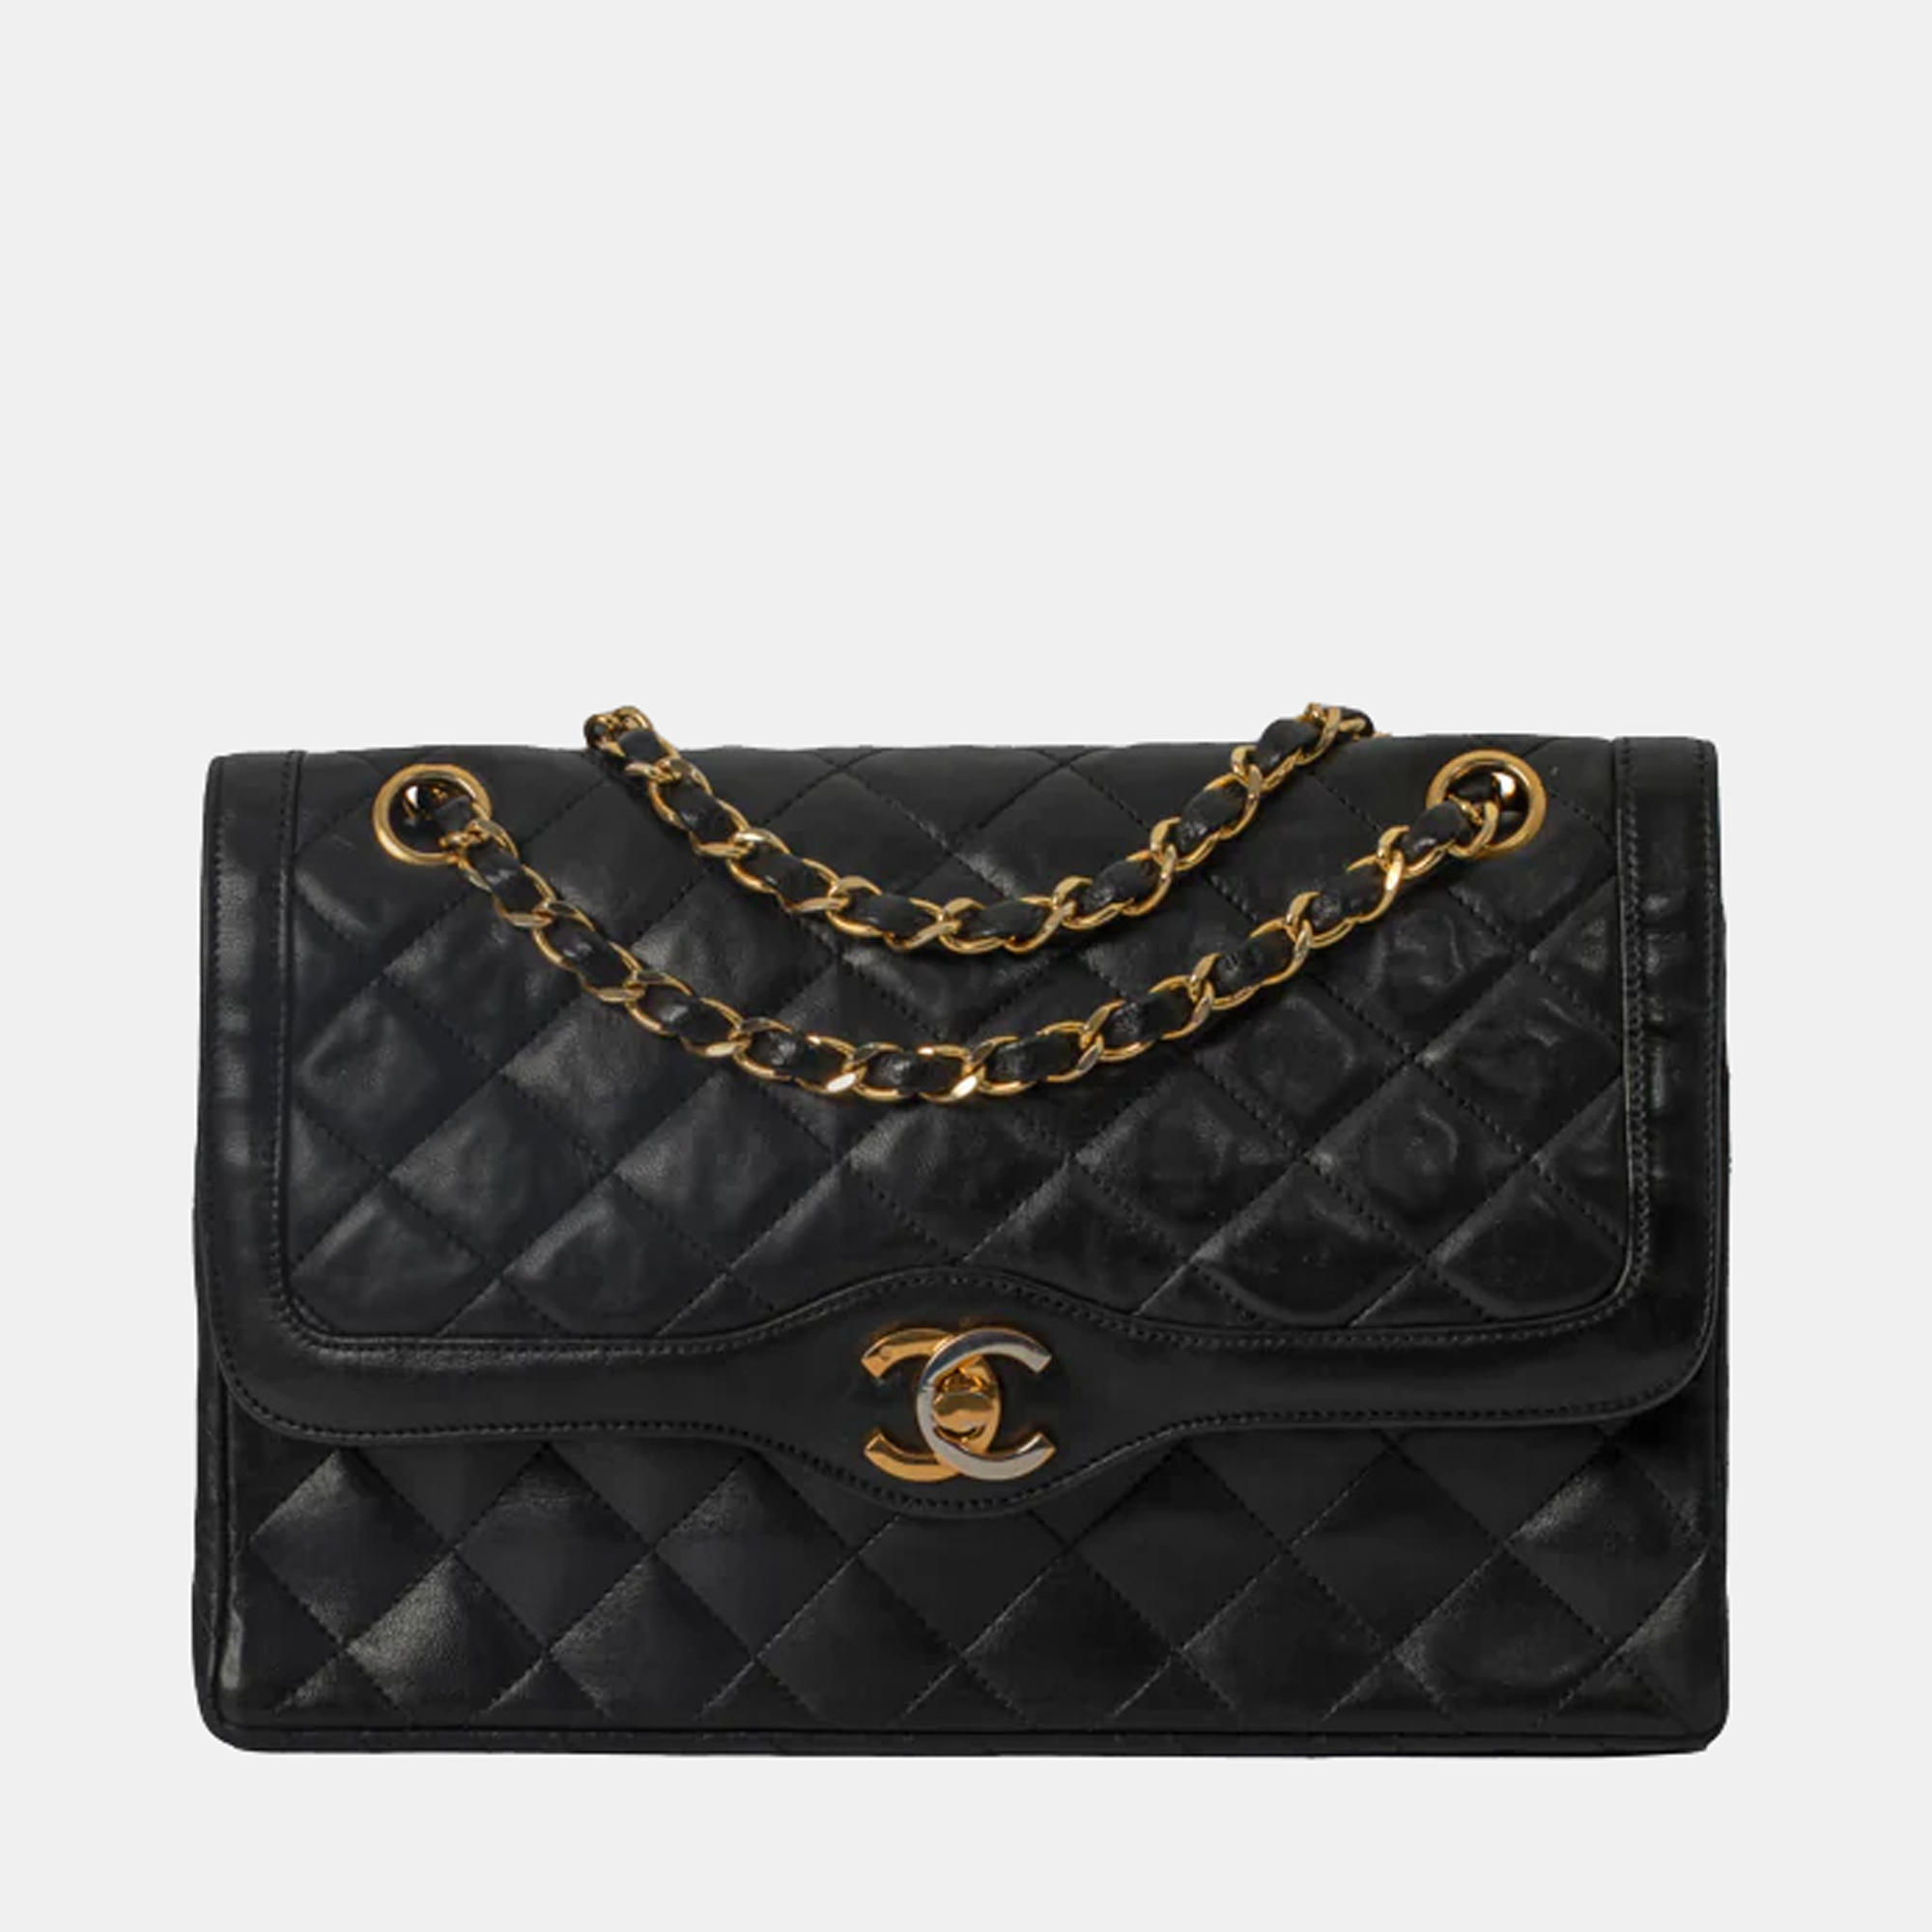 Chanel Black Leather Vintage Diana Flap bag Chanel | TLC